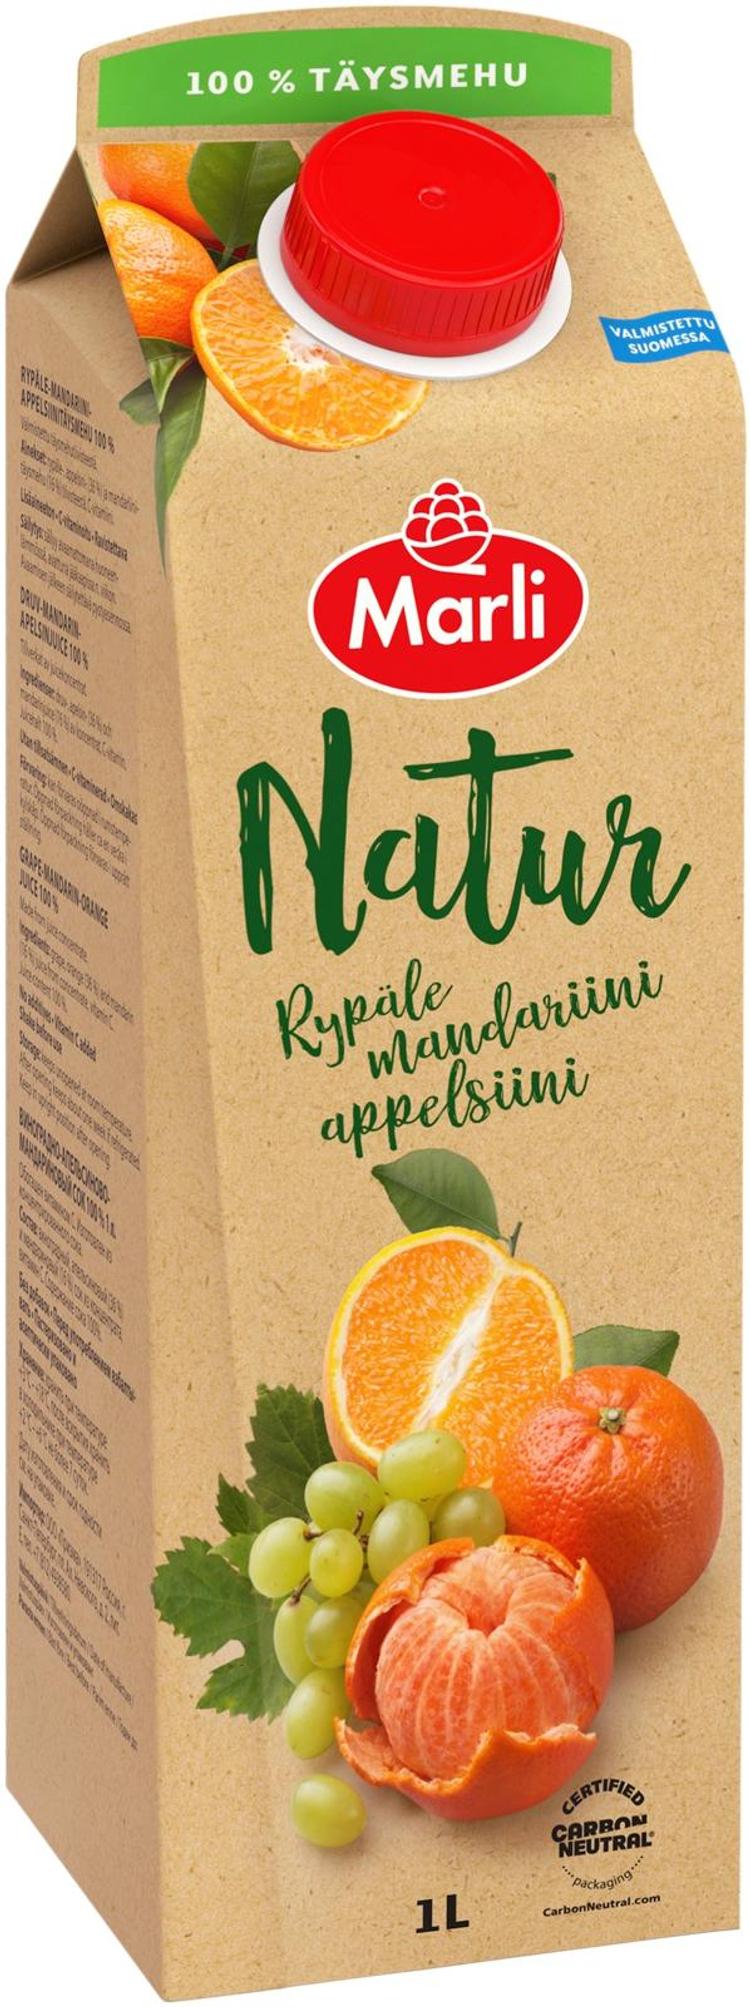 Marli Natur Rypäle-mandariini-appelsiinitäysmehu 100% 1L